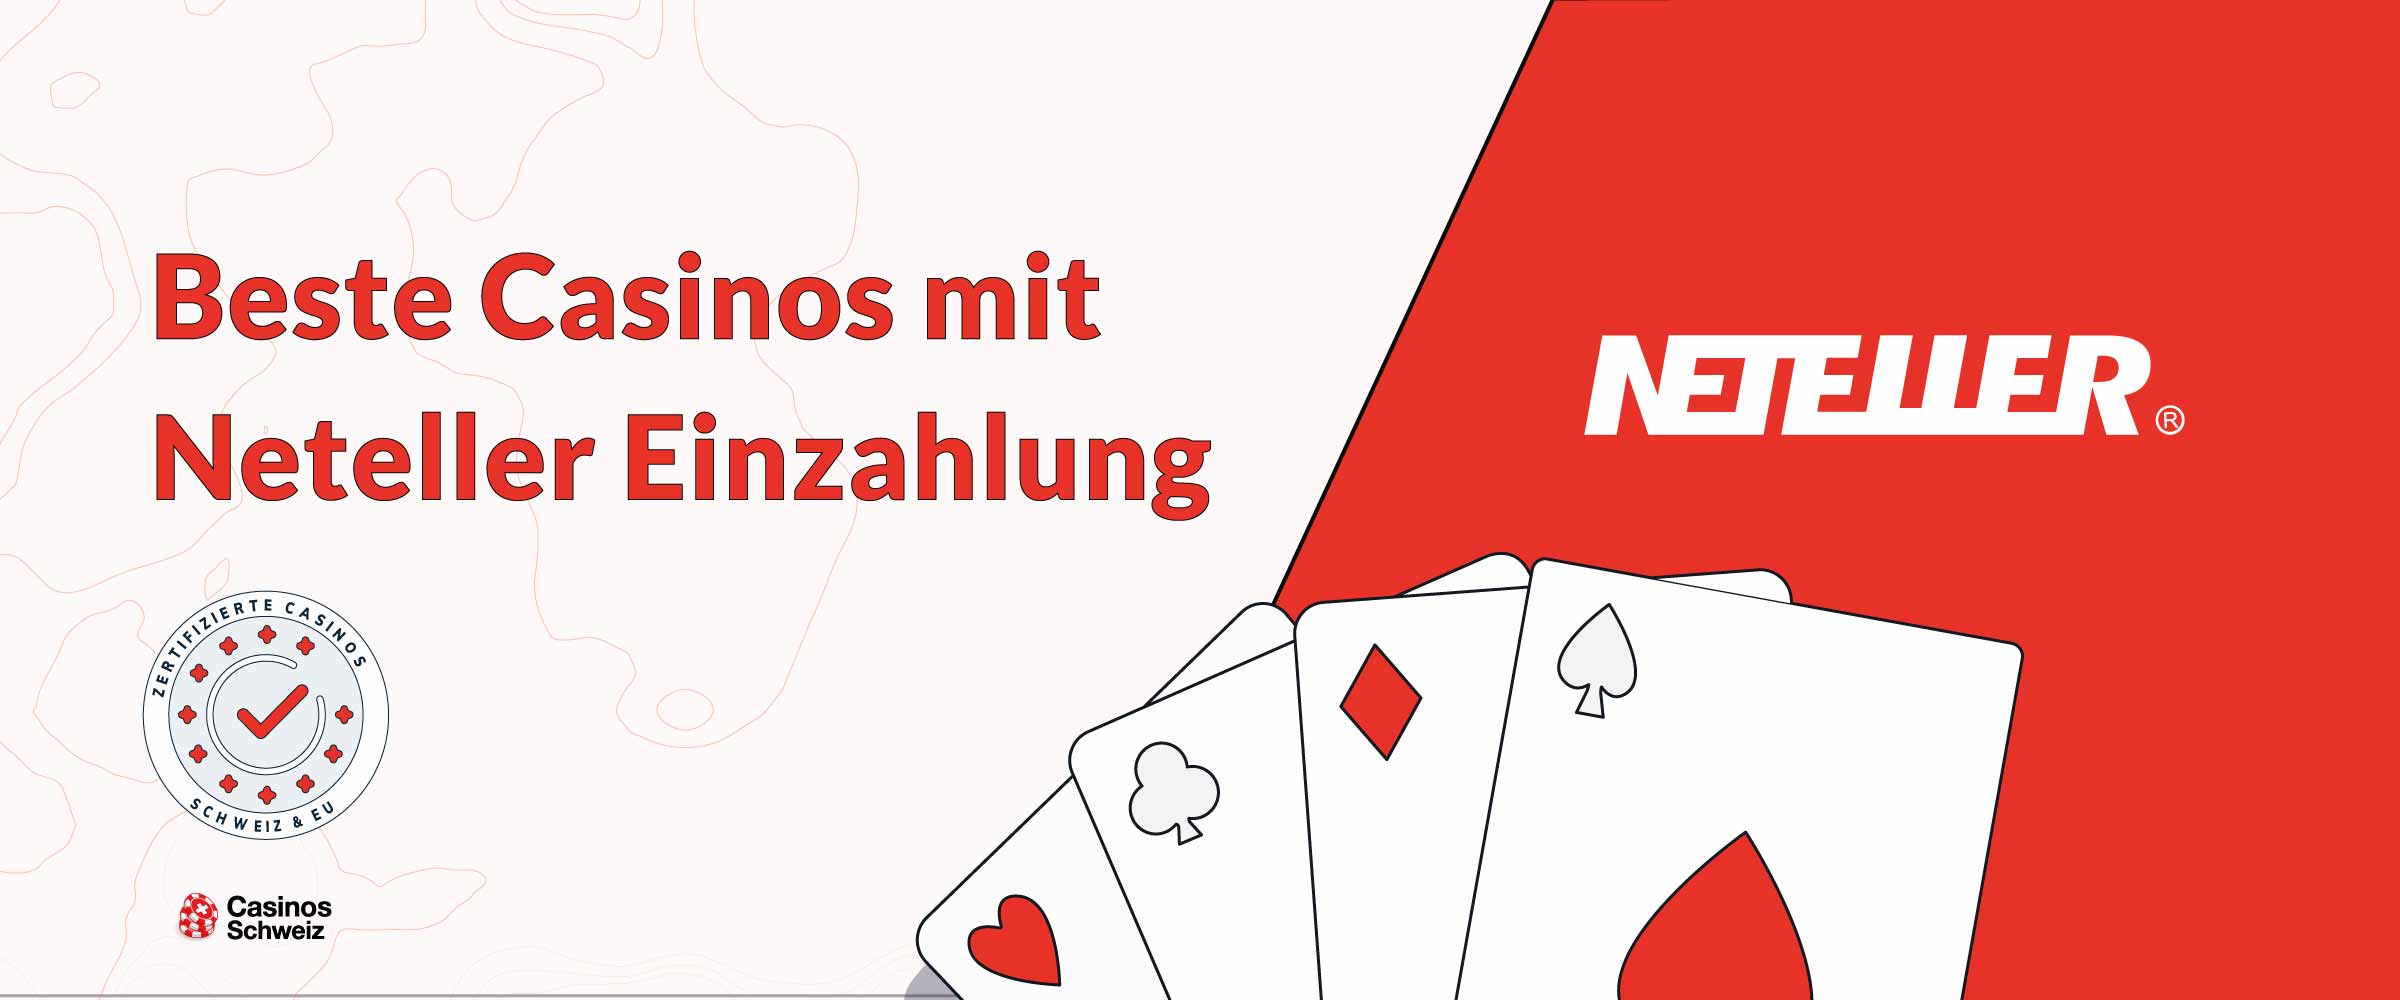 Beste Casinos Schweiz mit Neteller